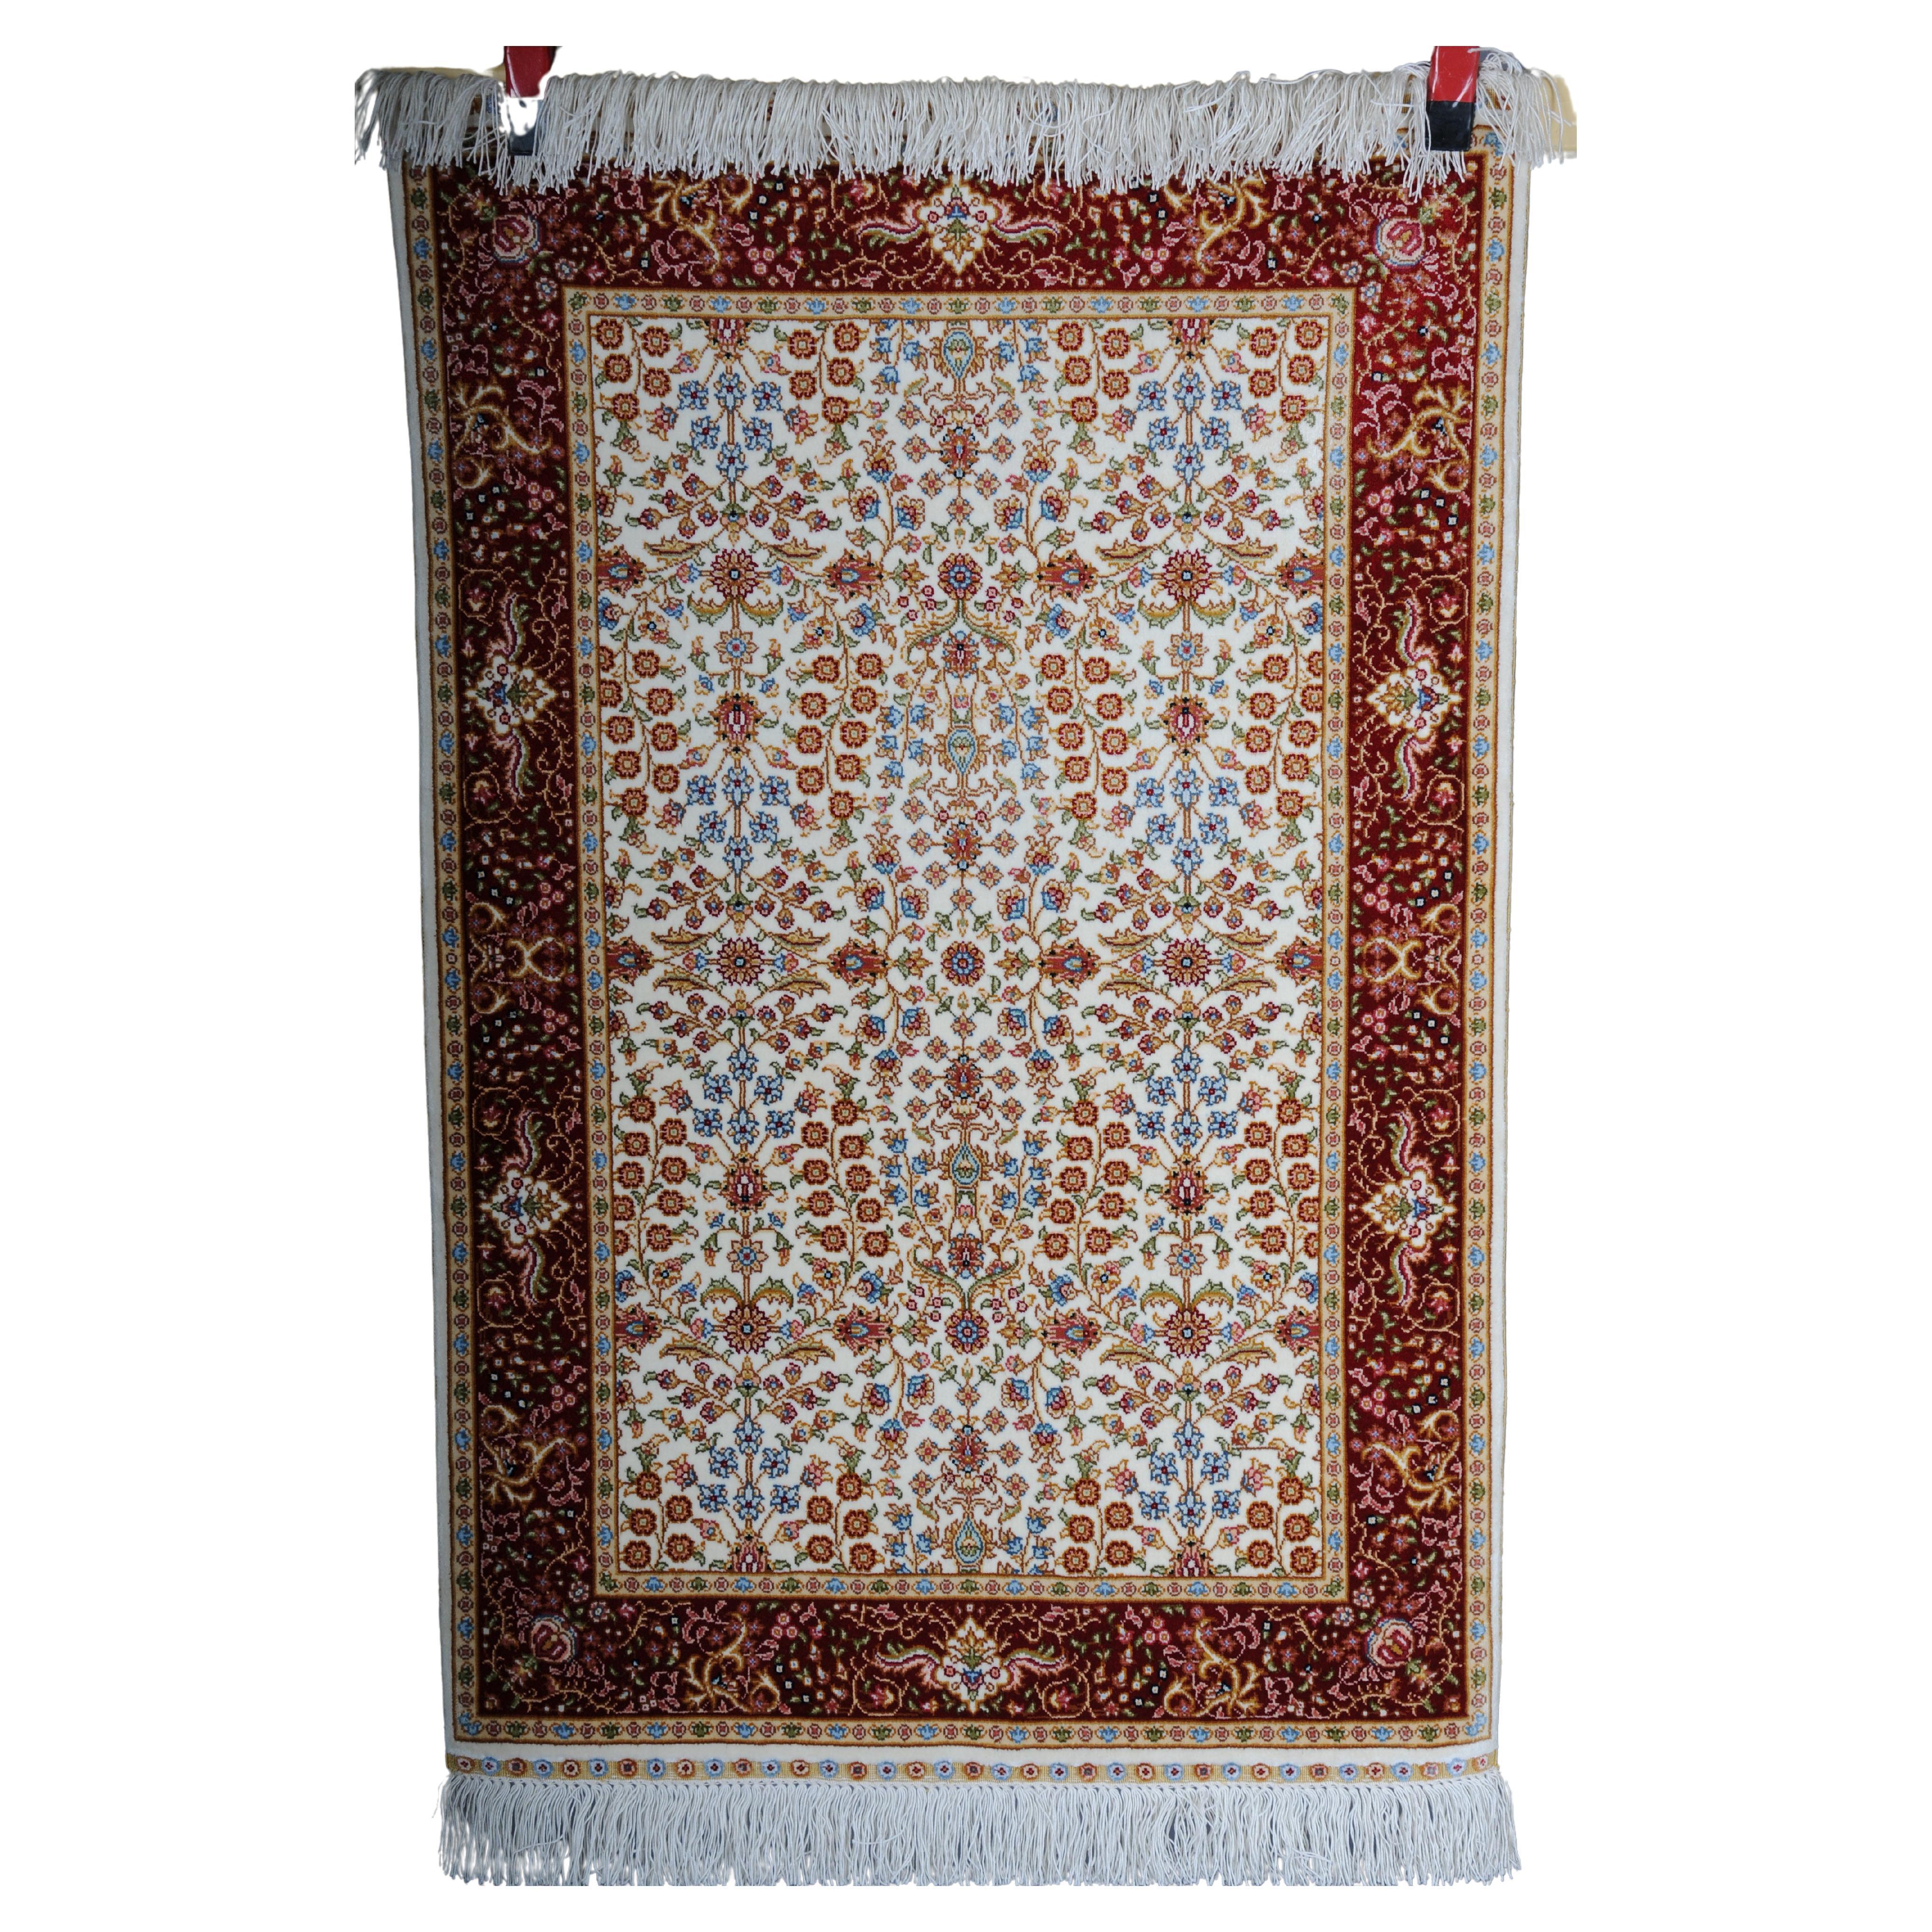 Anatolischer Gebetsteppich/ Tapetenteppich aus Baumwolle/Seide, 20. Jahrhundert